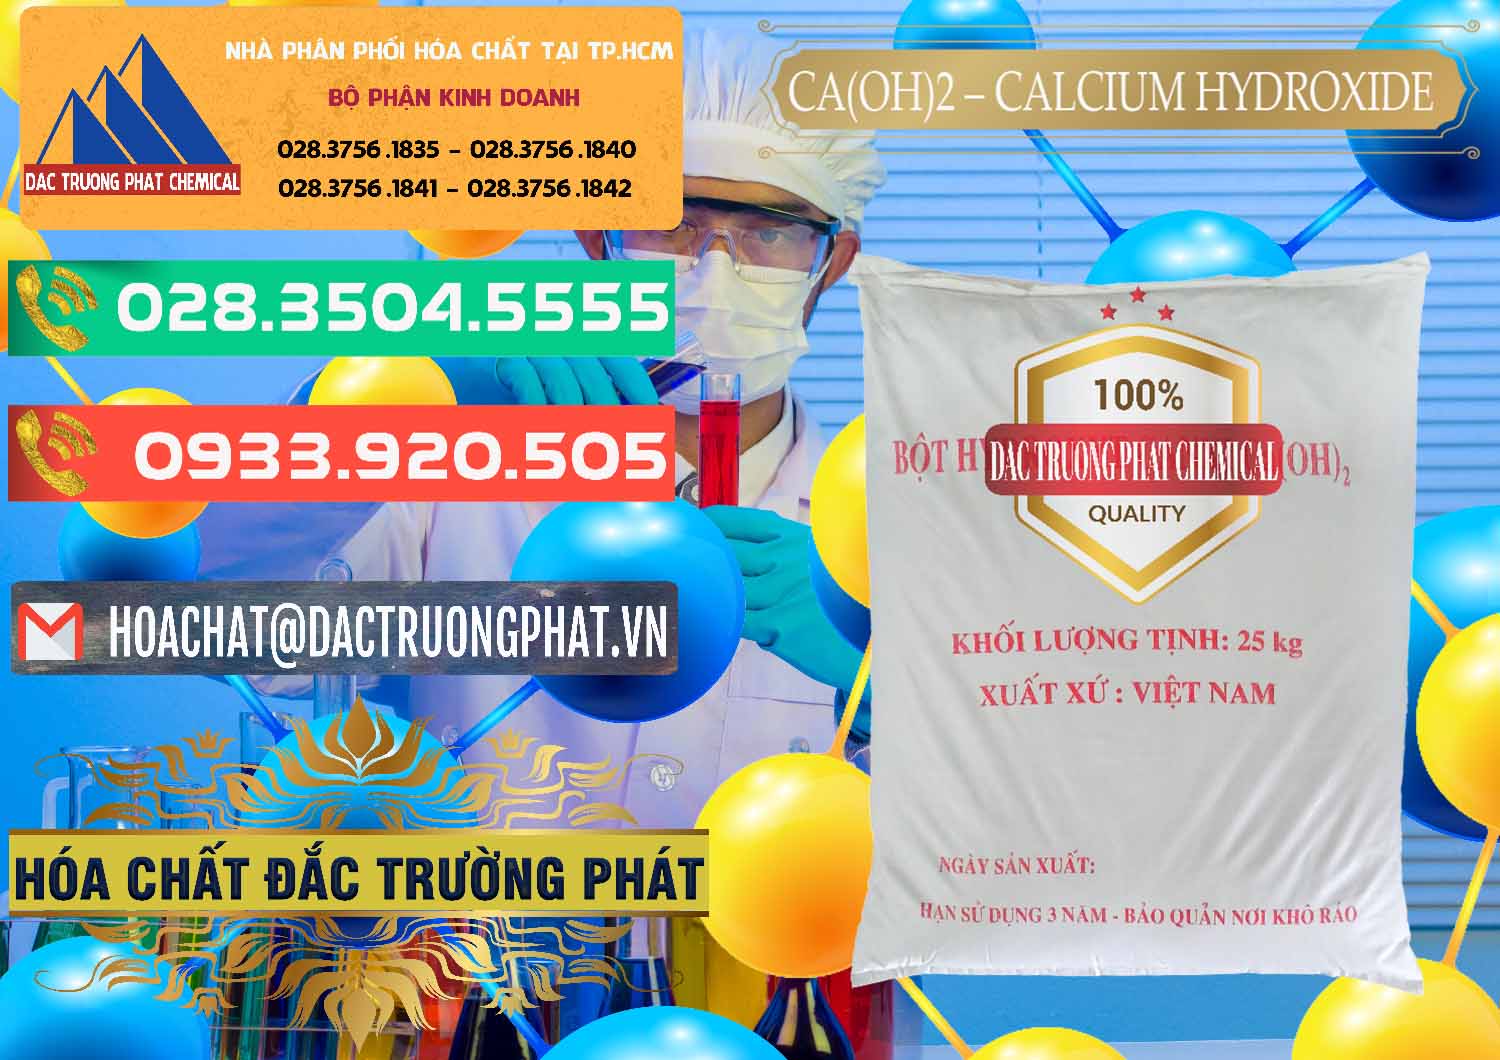 Cty chuyên phân phối _ kinh doanh Ca(OH)2 - Calcium Hydroxide Việt Nam - 0186 - Công ty chuyên bán ( cung cấp ) hóa chất tại TP.HCM - congtyhoachat.com.vn